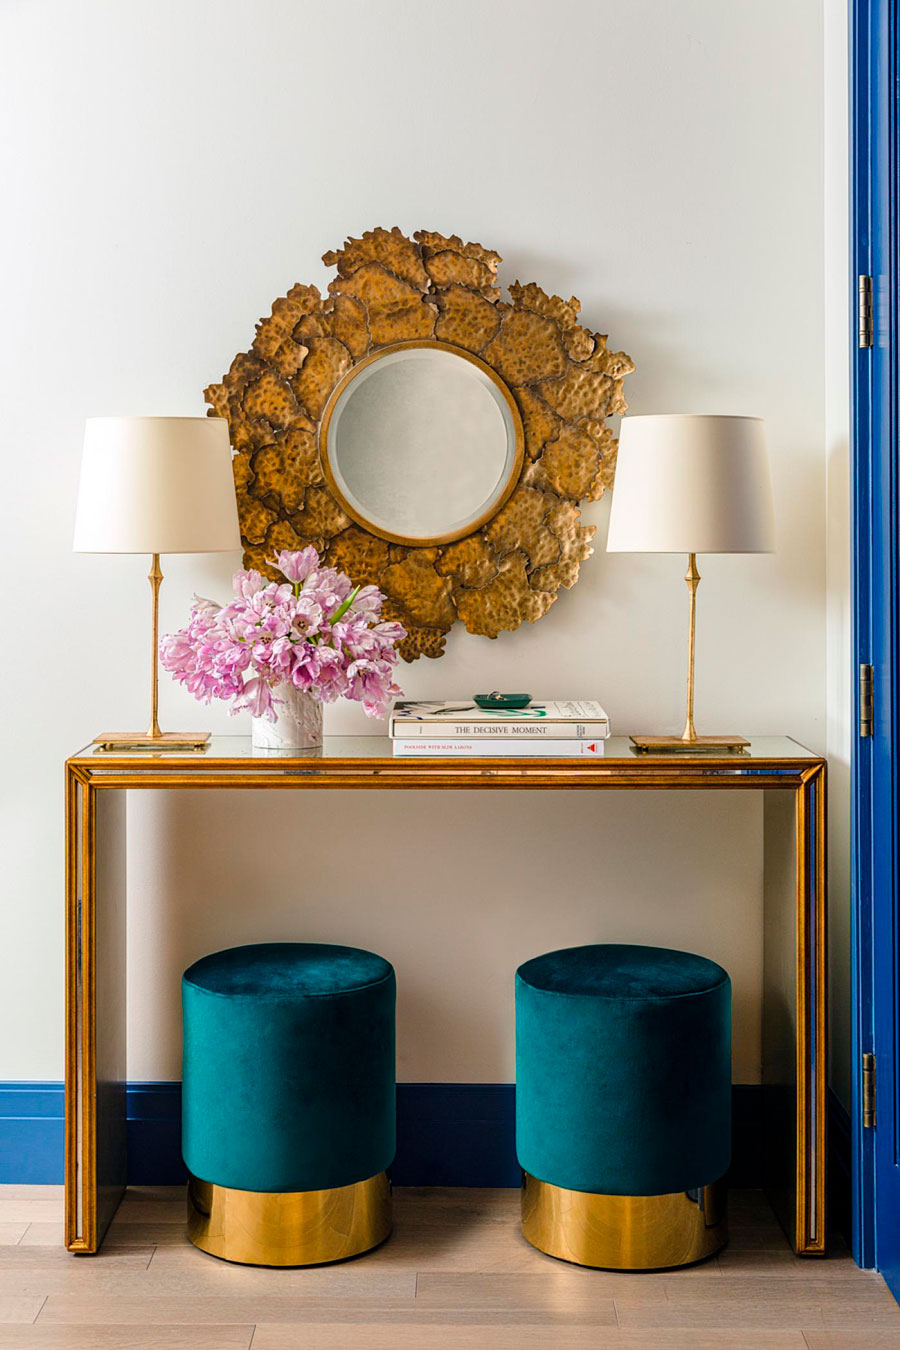 Un rincón glam dorado sobre pared blanca, con pisos cubiertos de terciopelo azul